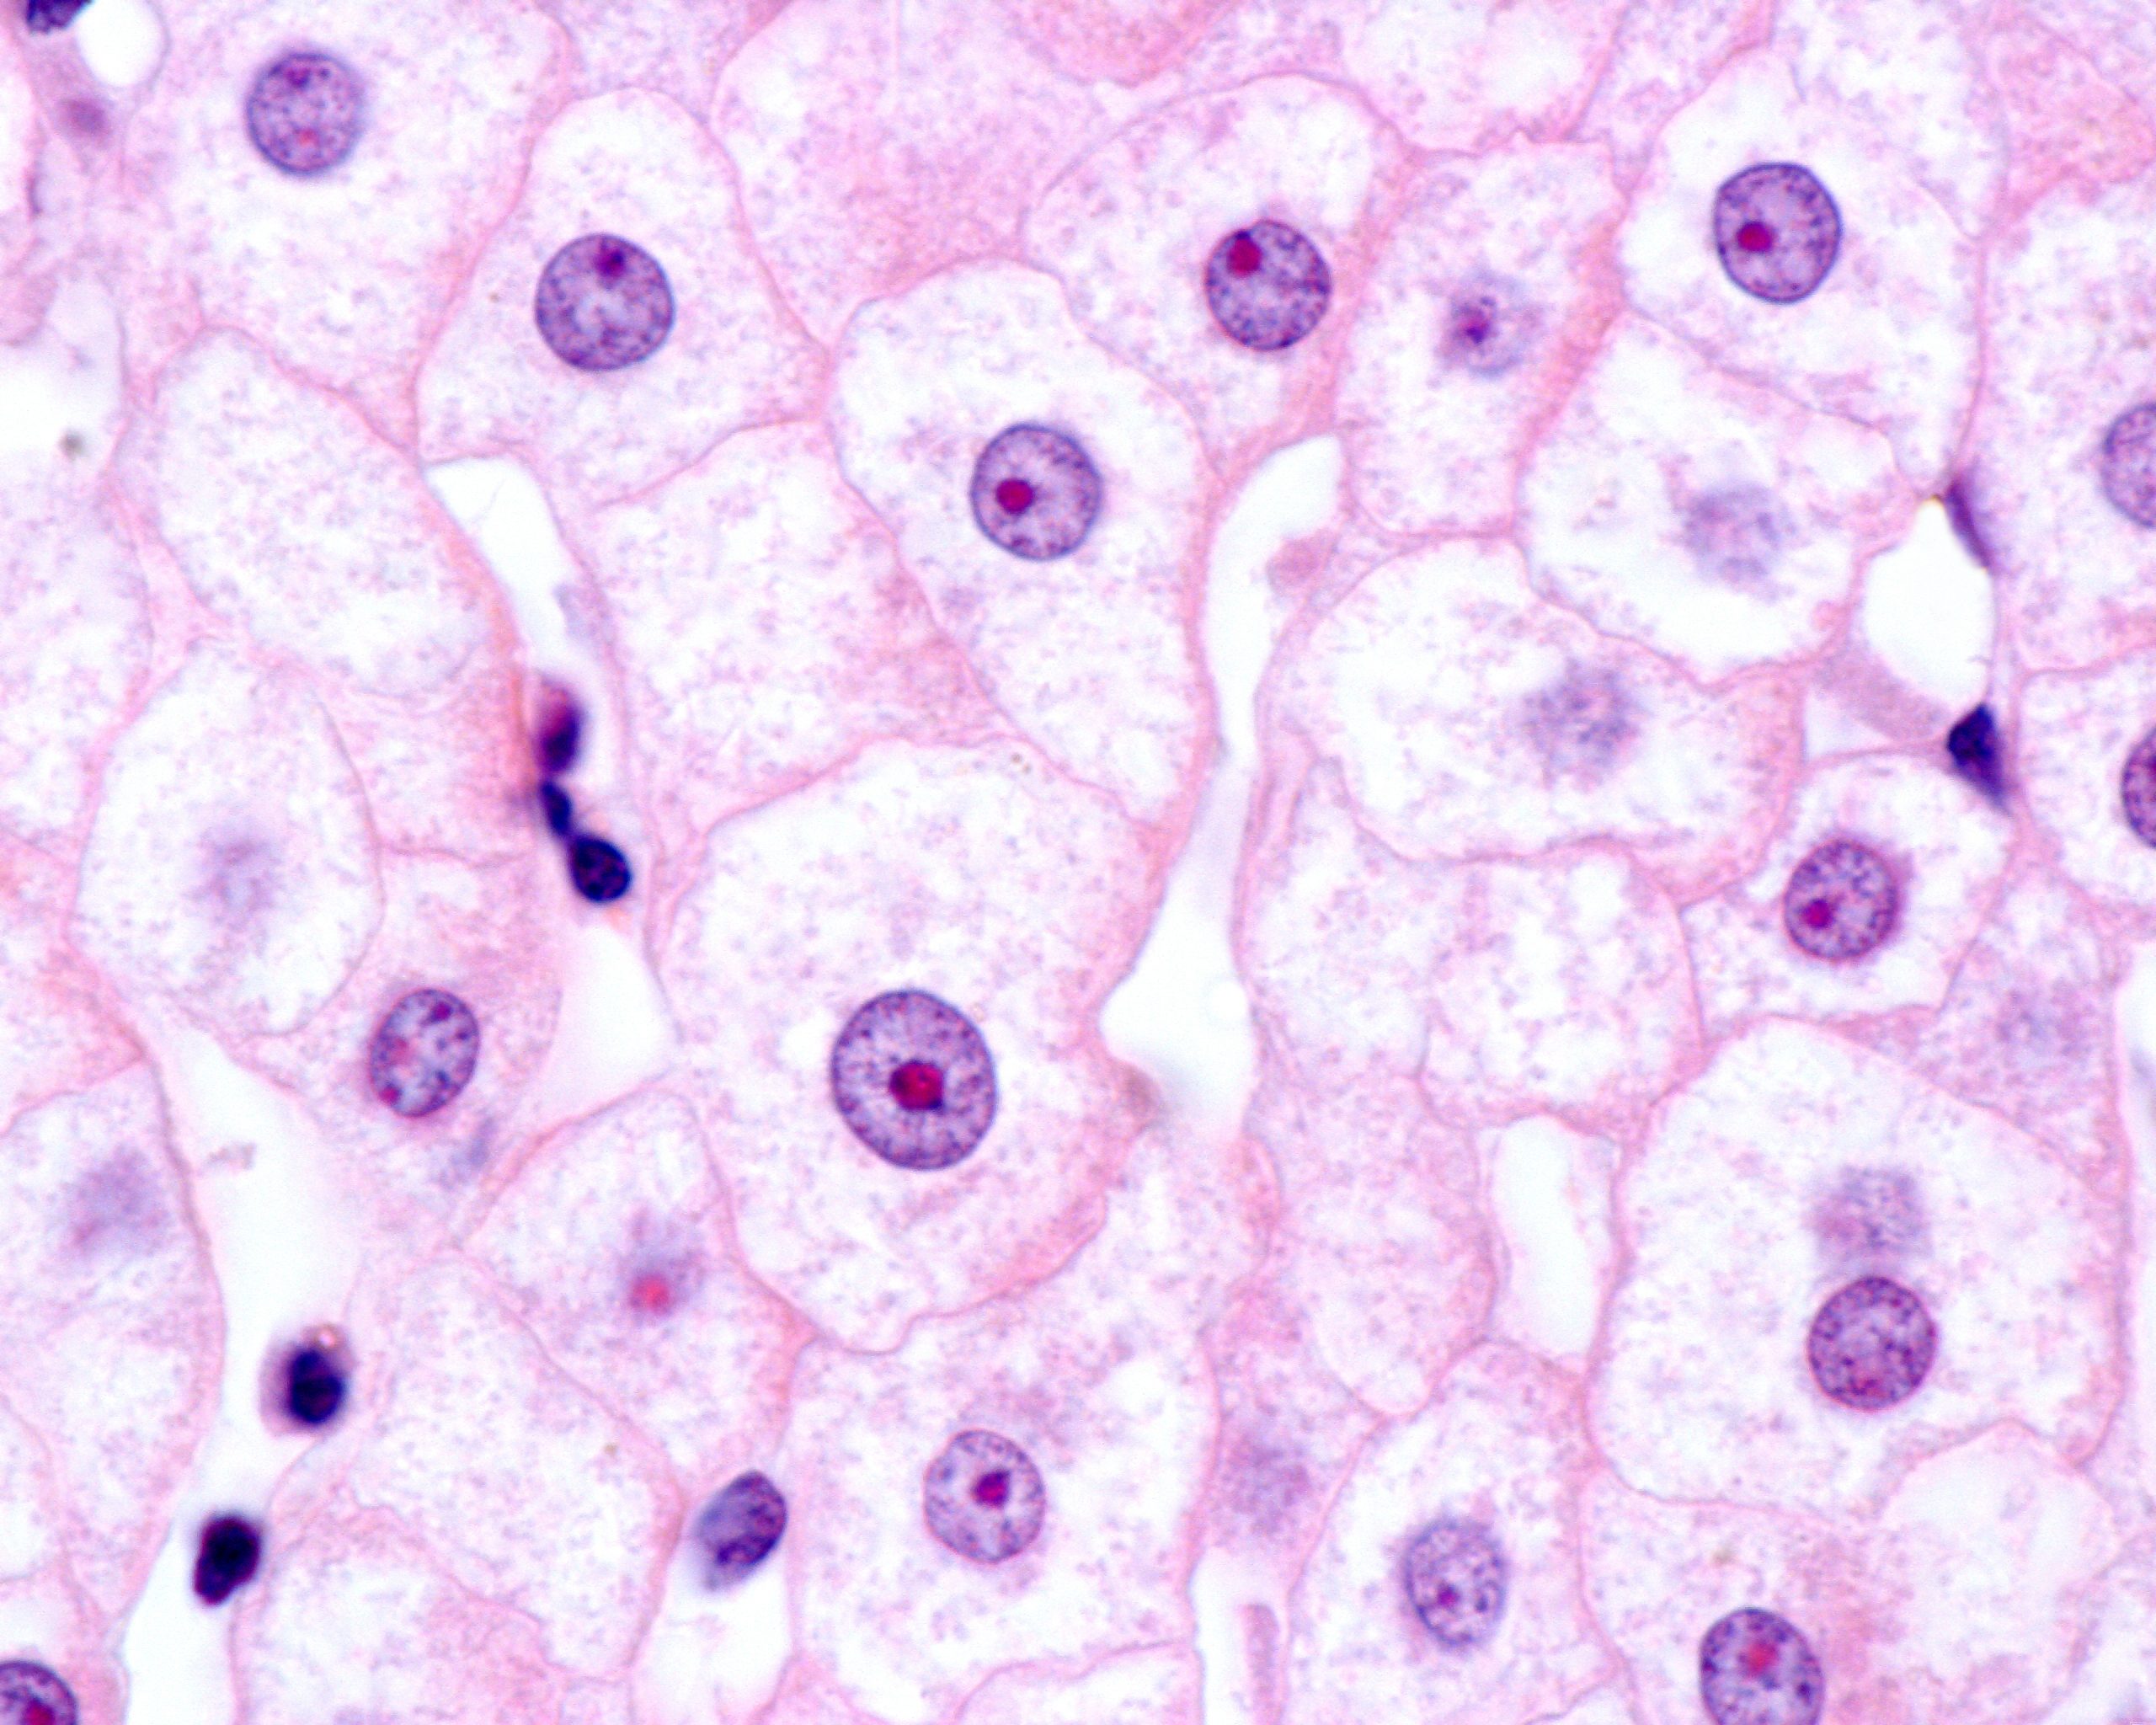 hepatocytes